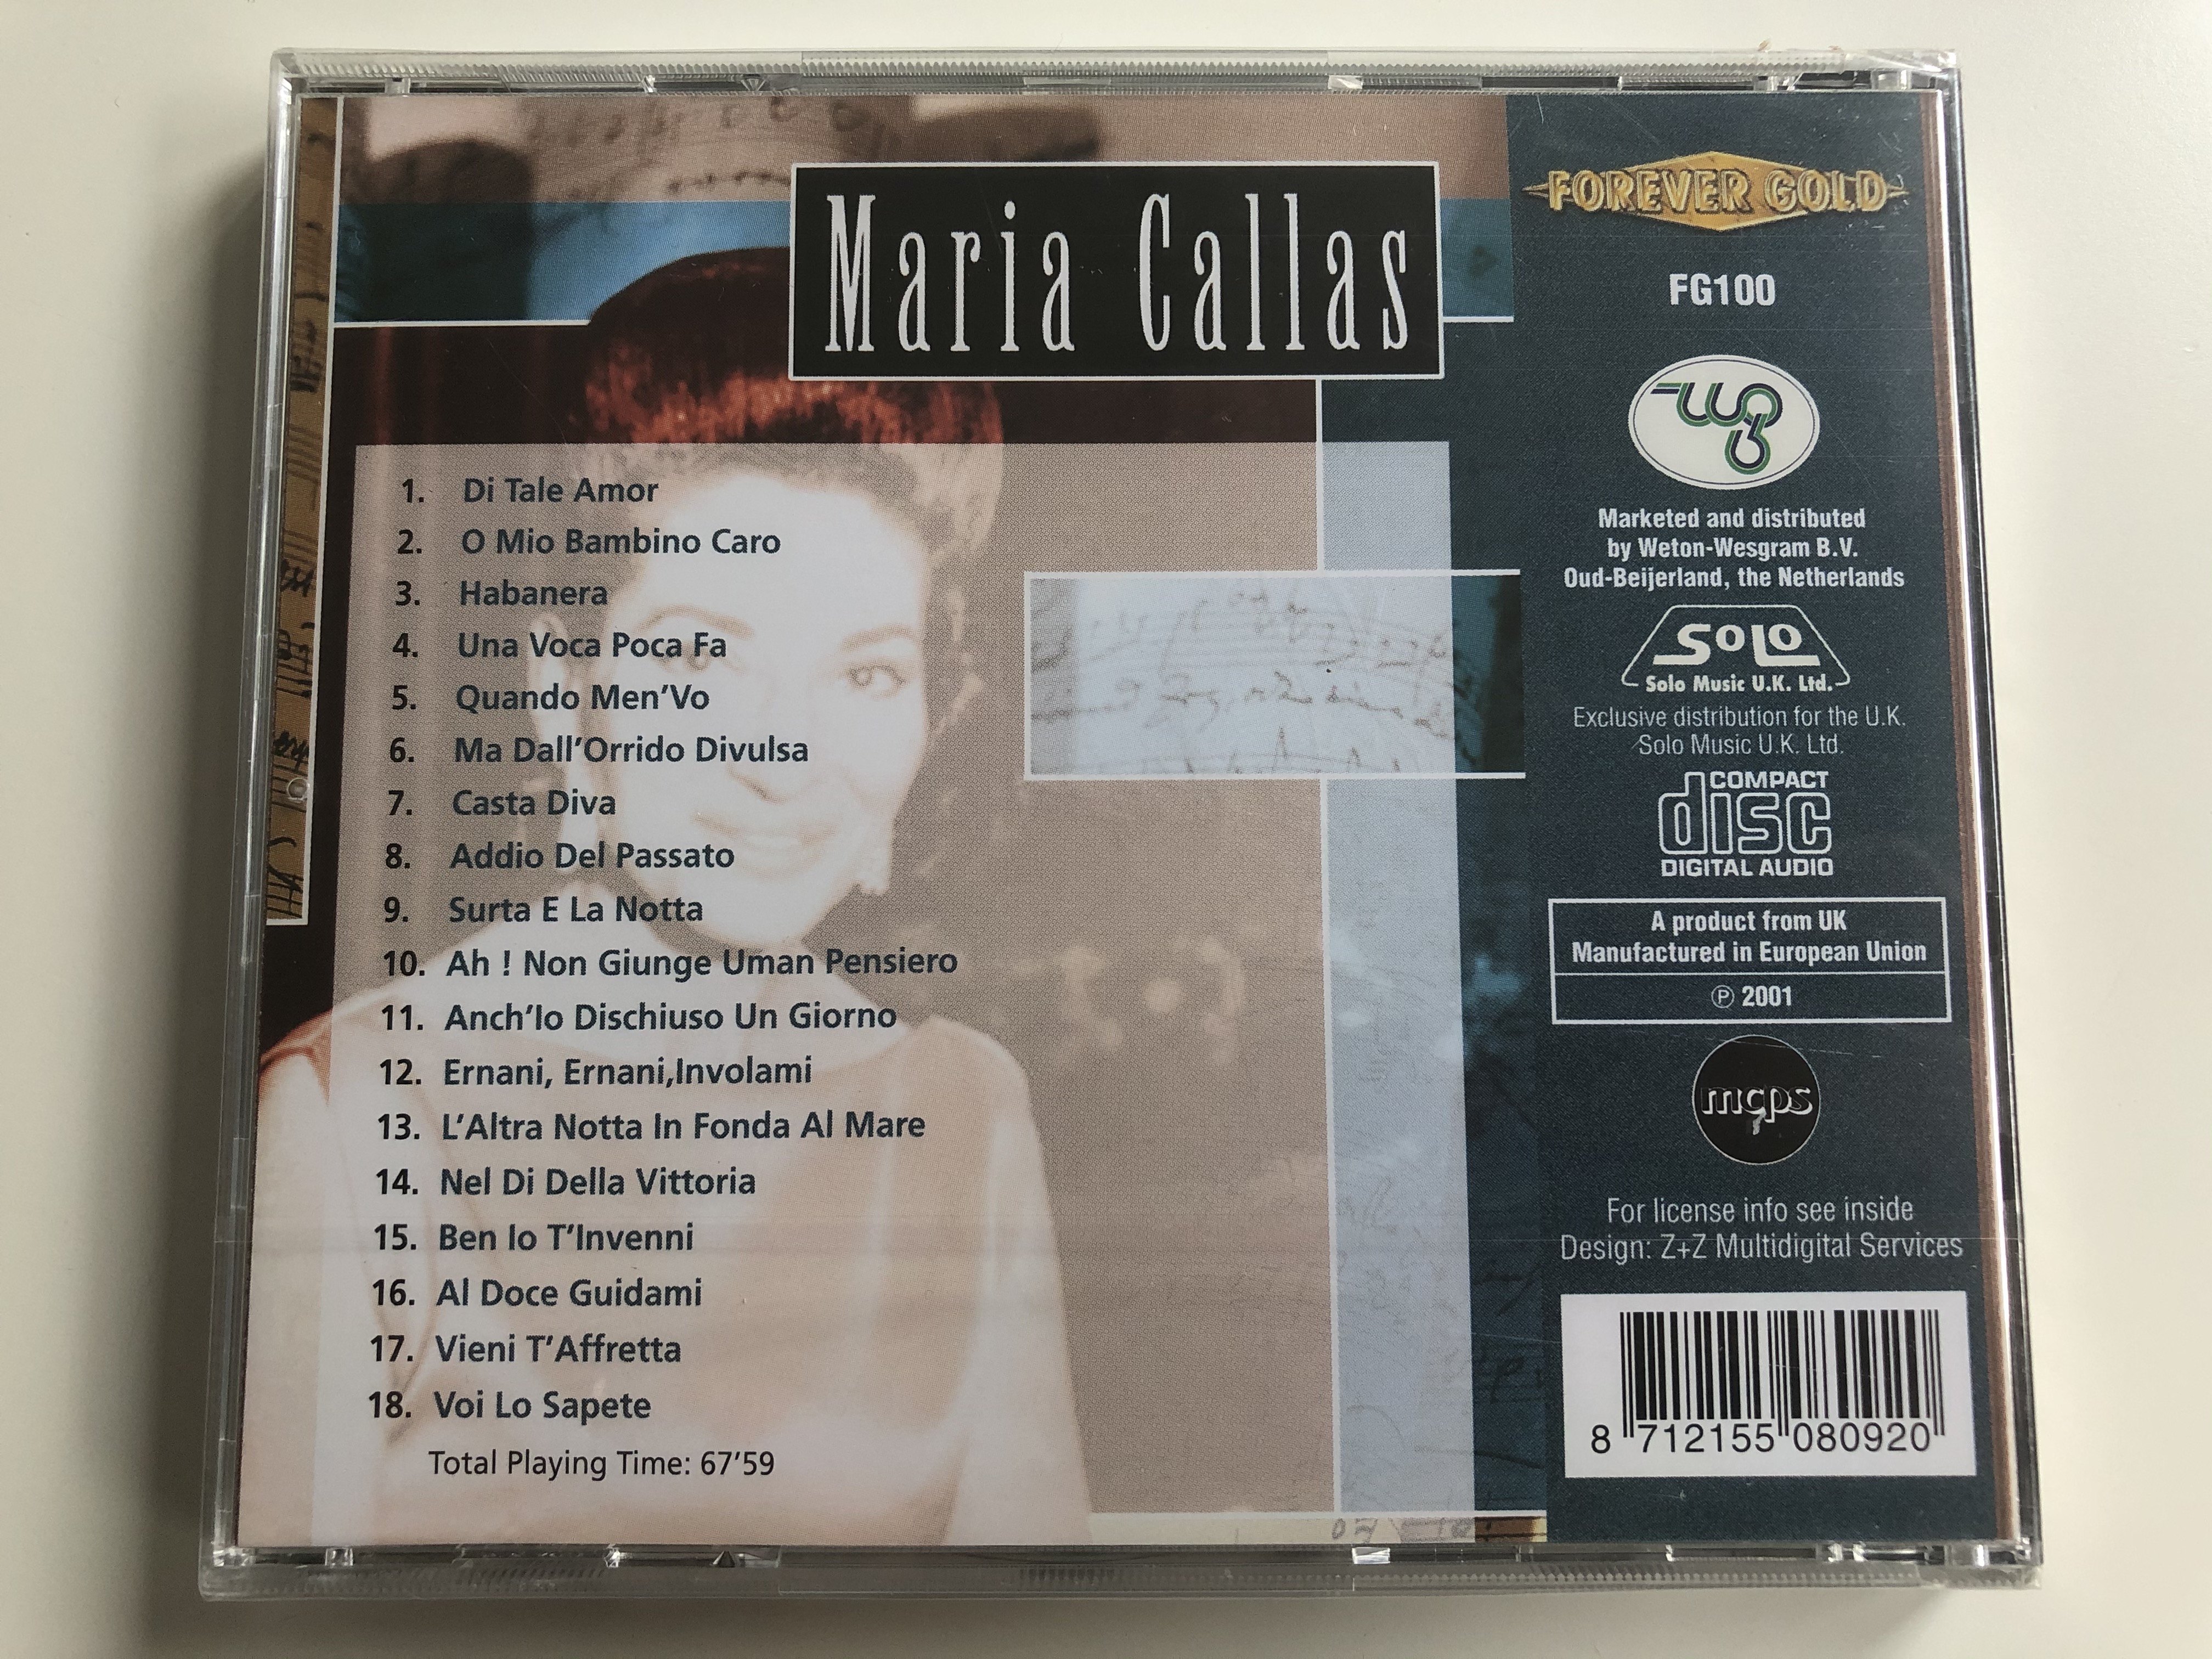 maria-callas-di-tale-amor-habanera-una-voca-poca-fa-addio-del-passato-forever-gold-audio-cd-2001-fg100-2-.jpg